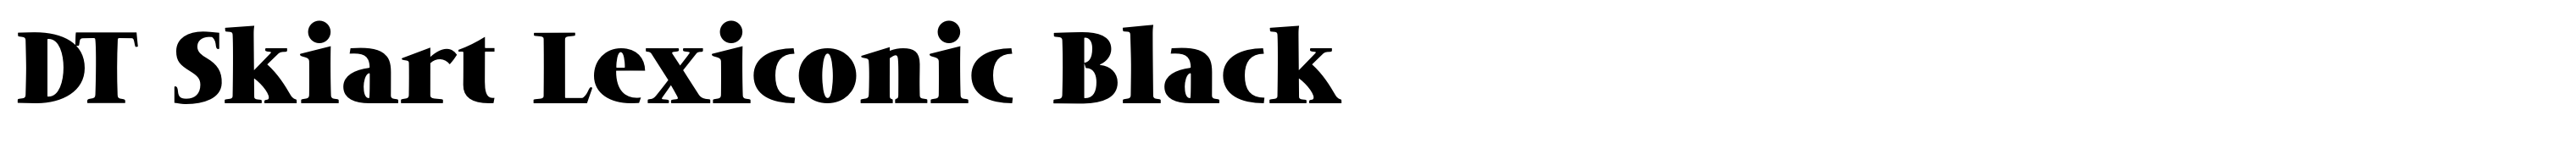 DT Skiart Lexiconic Black